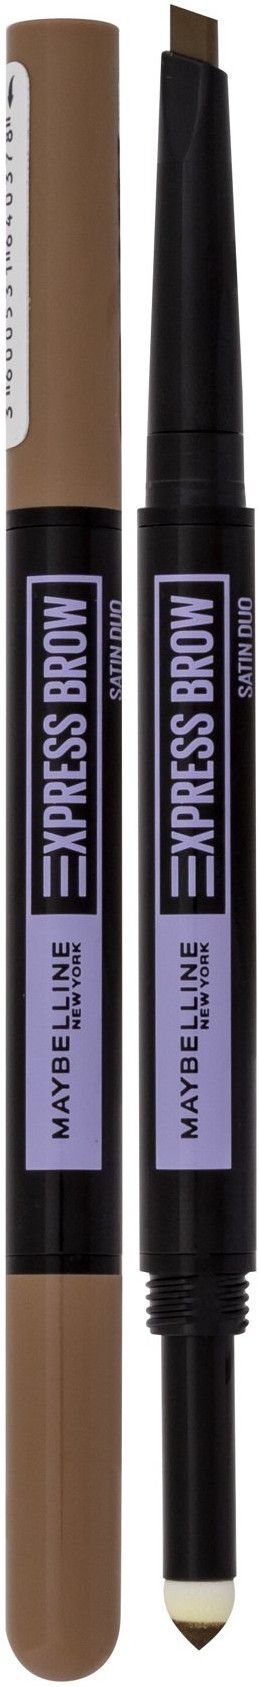 Maybelline Express Brow Satin Duo 01 Dark Blonde